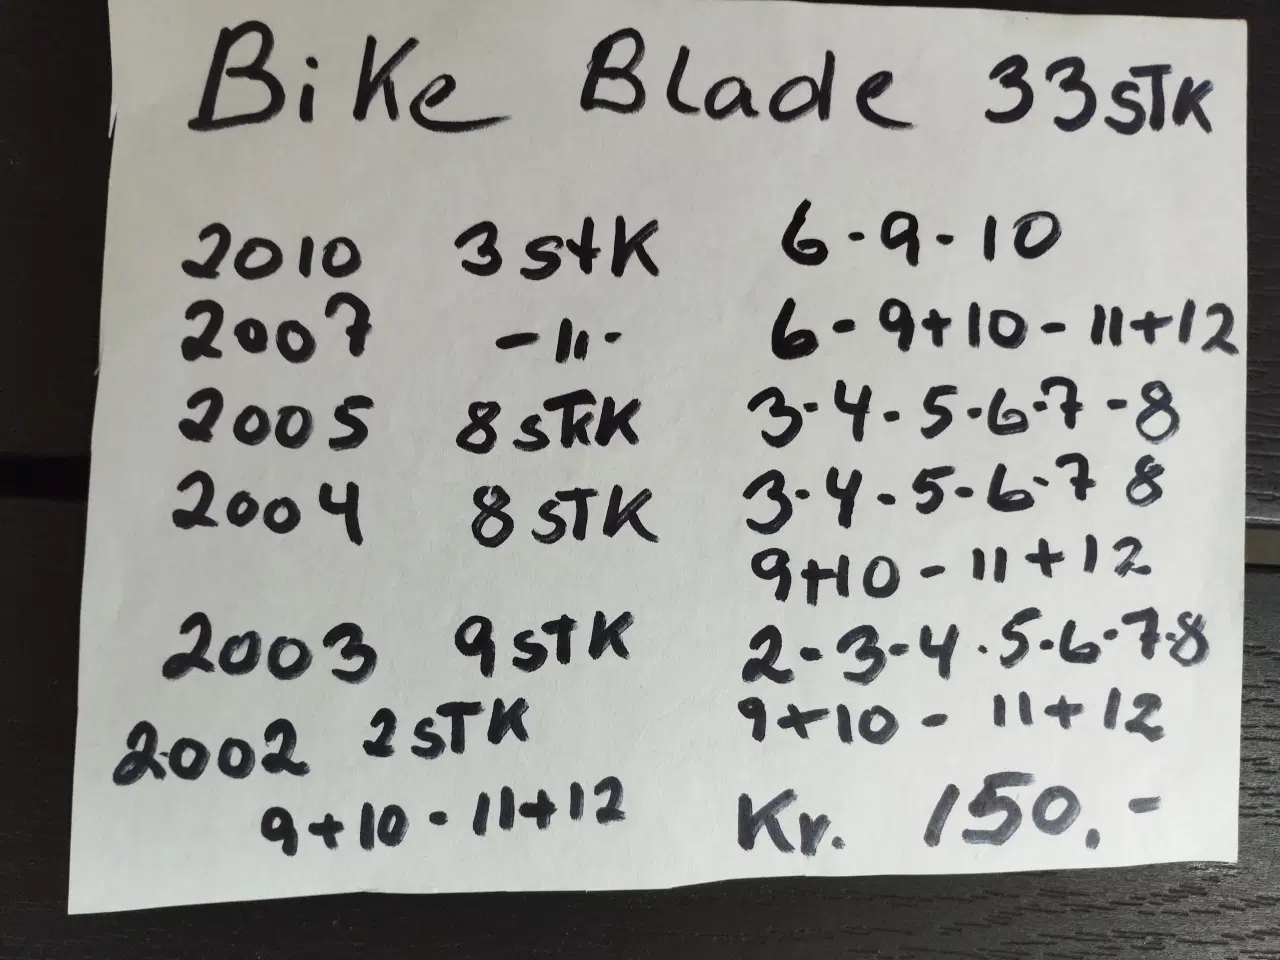 Billede 3 - 33 stk. Blade Bike. 